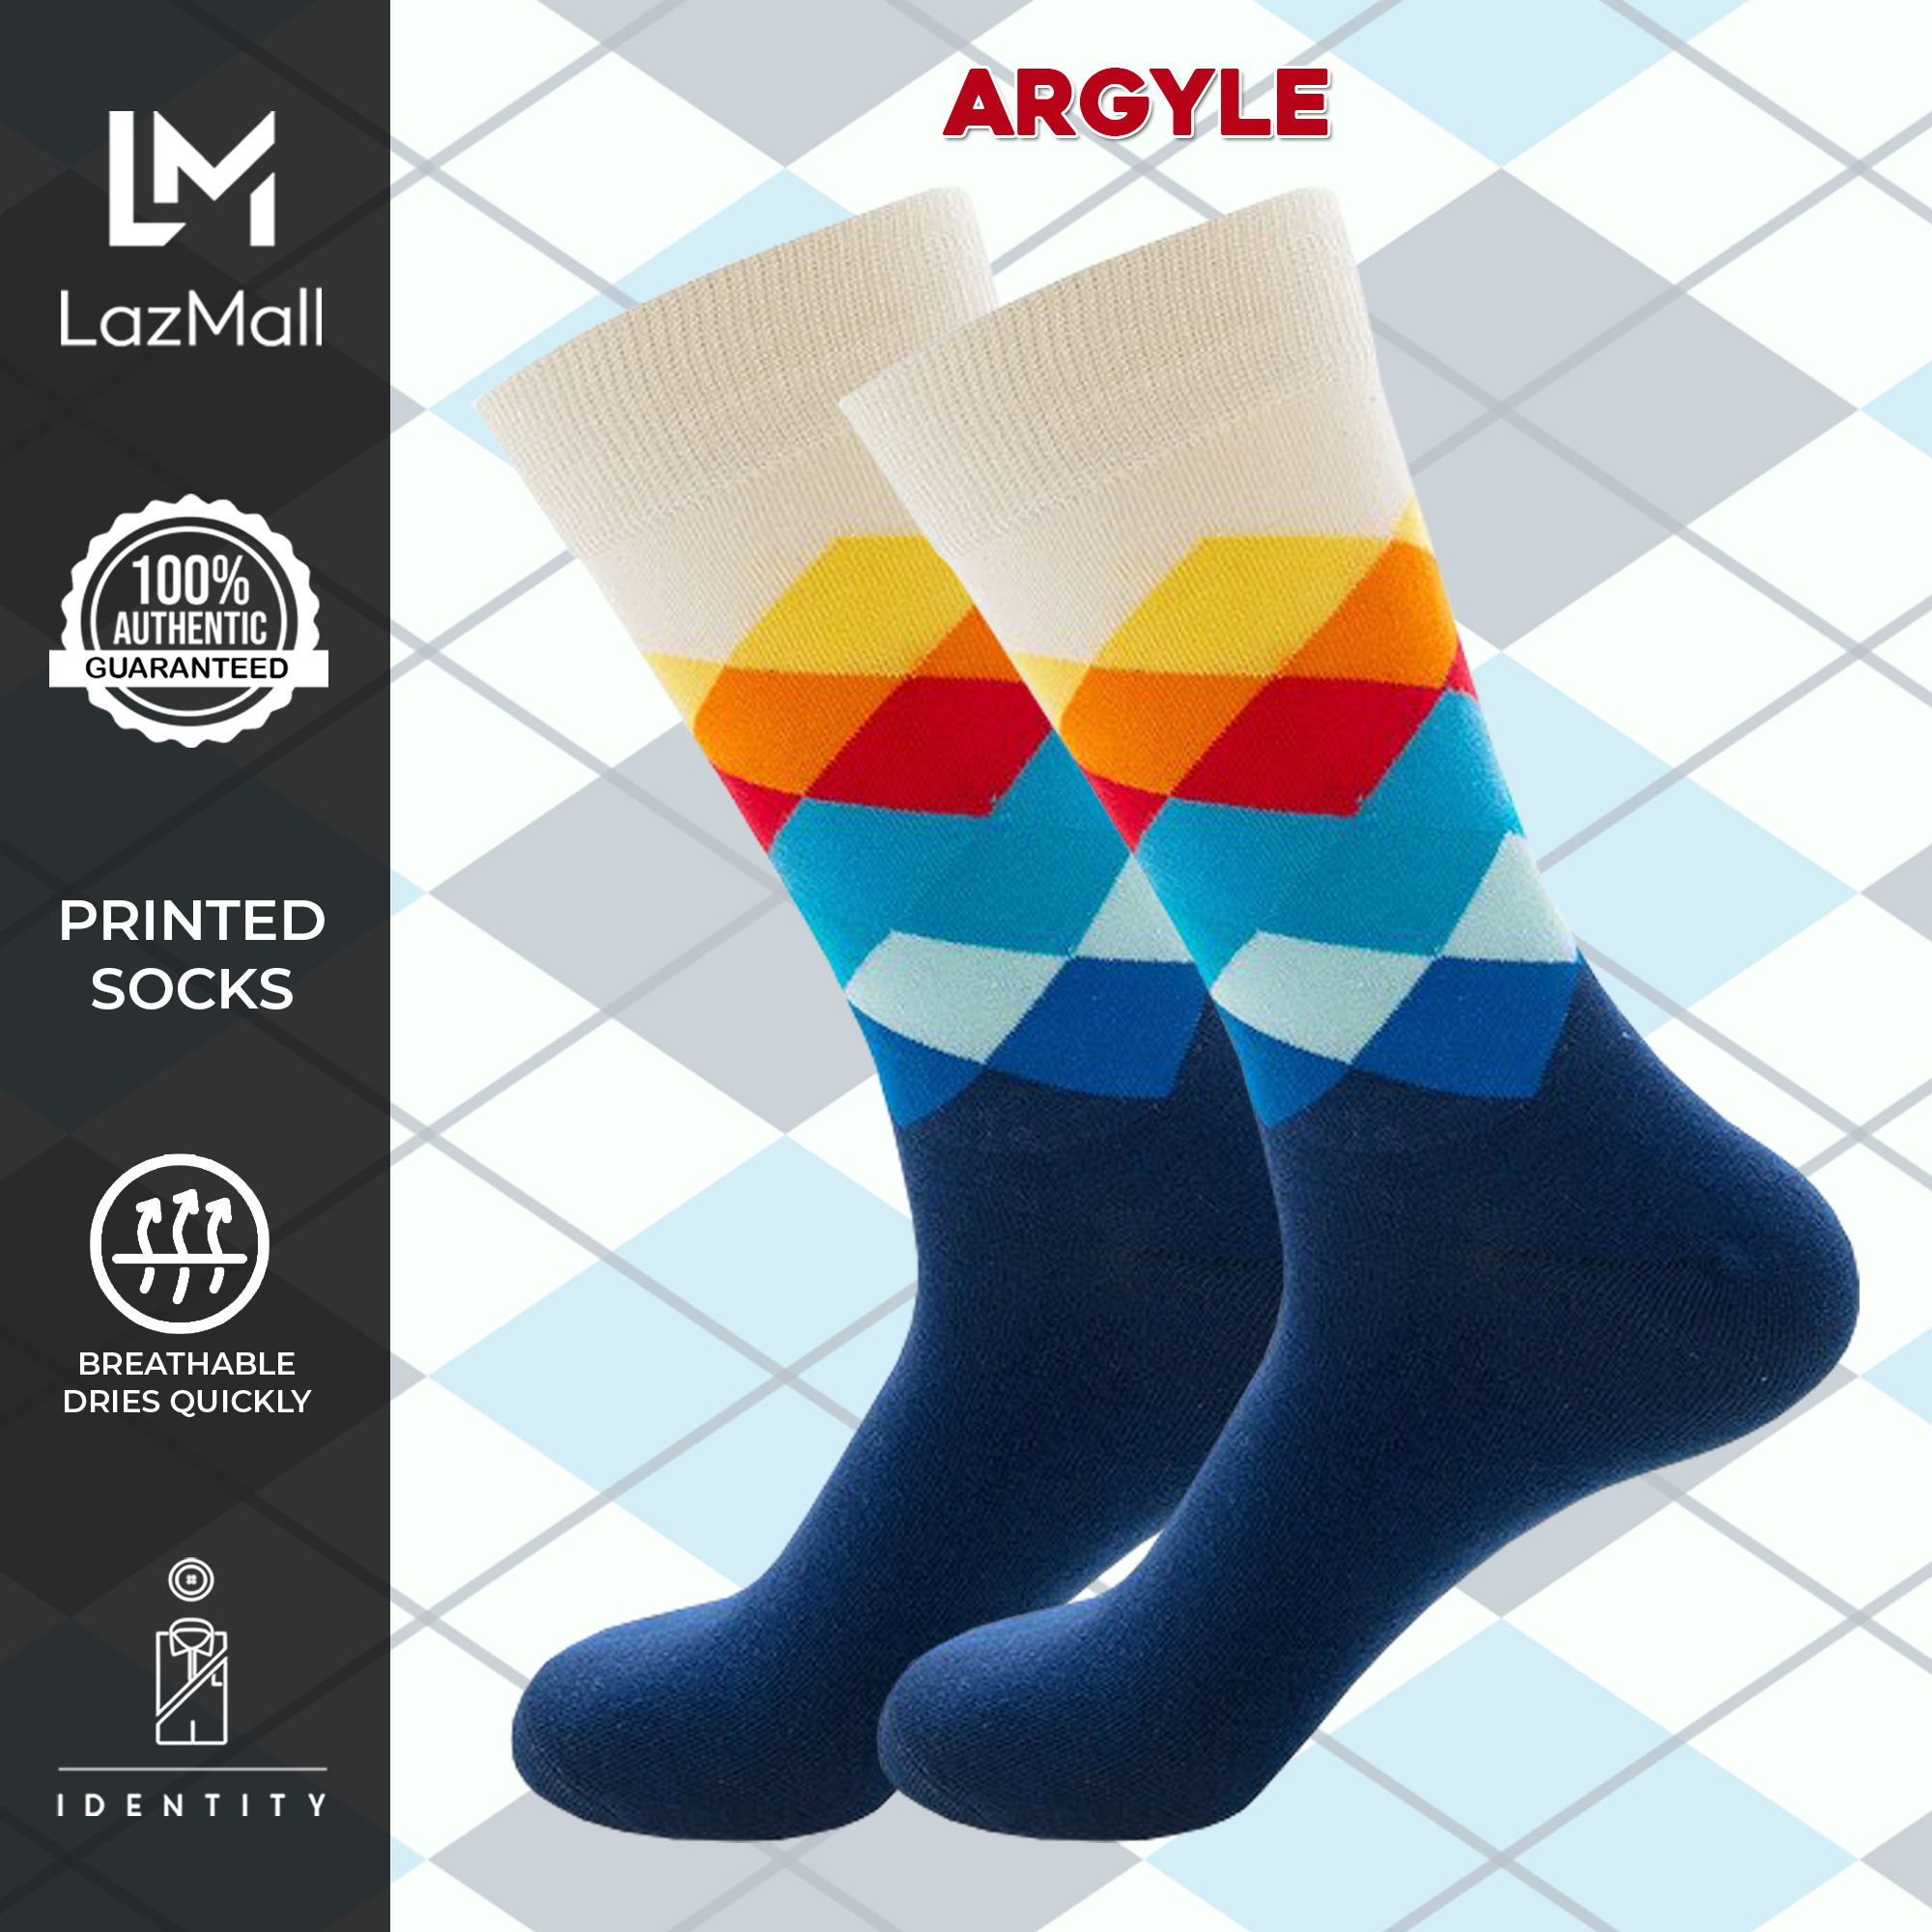 buy socks online